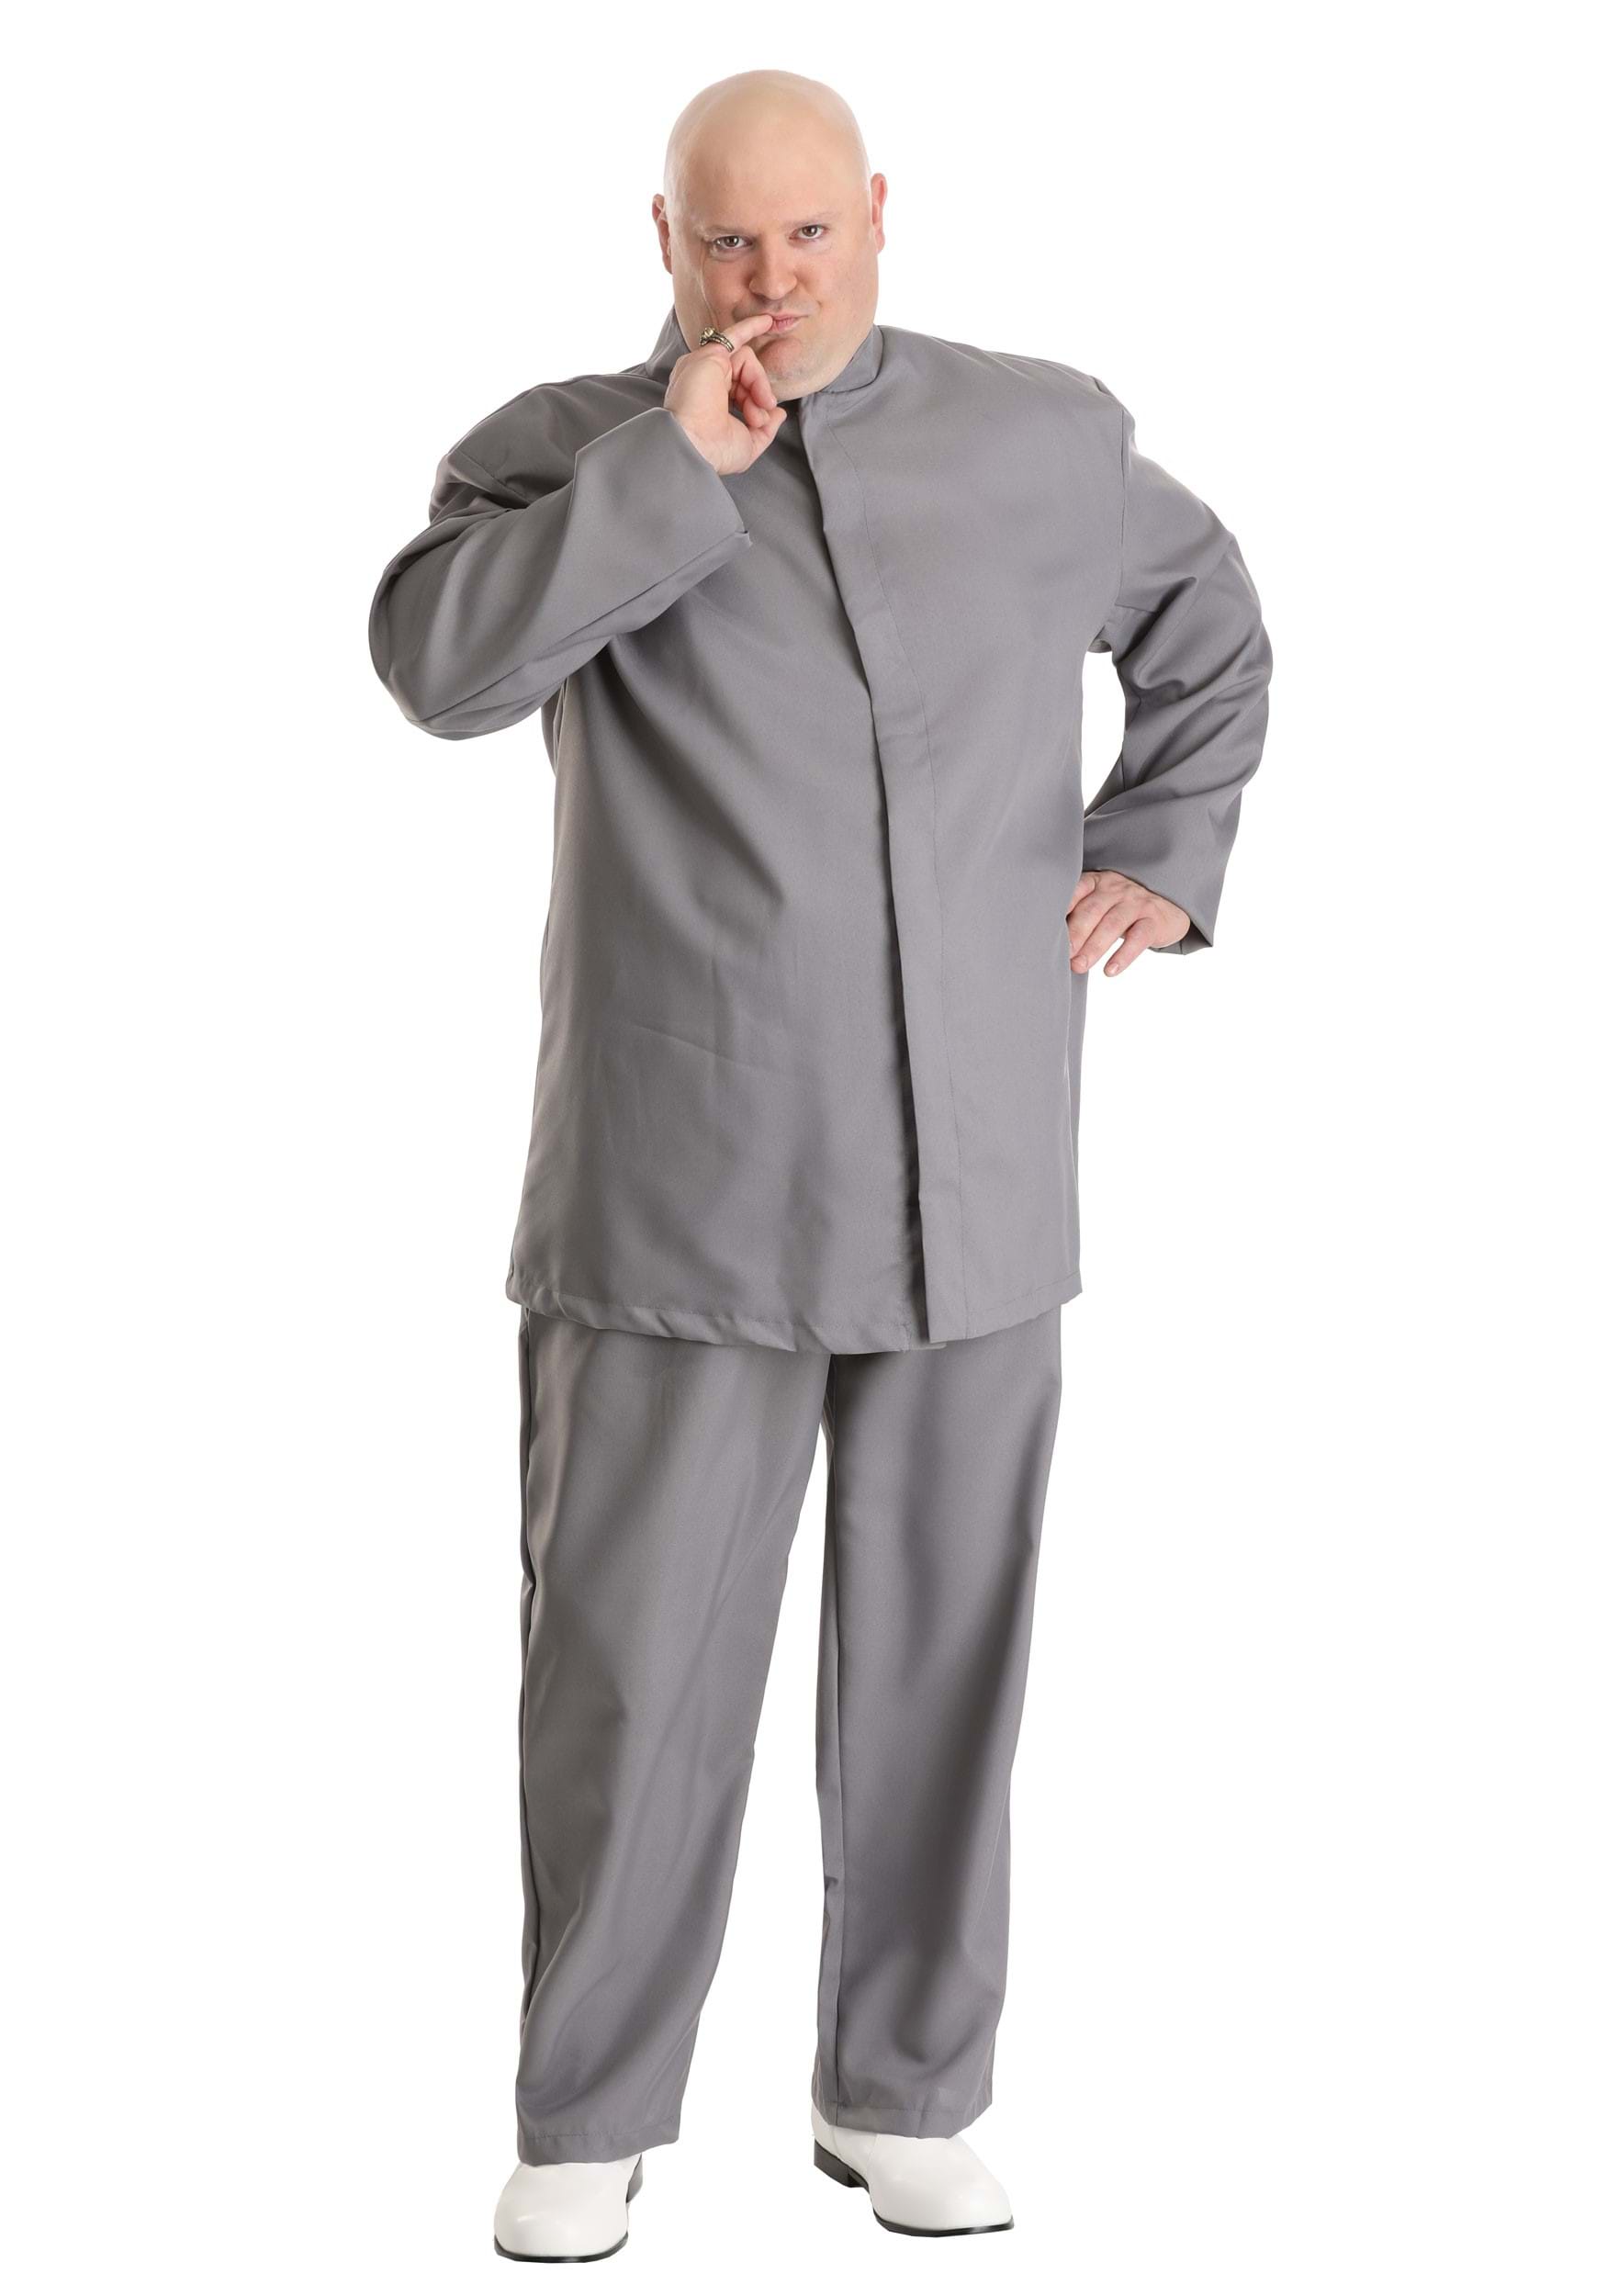 Evil Gray Plus Size Costume Suit for Men